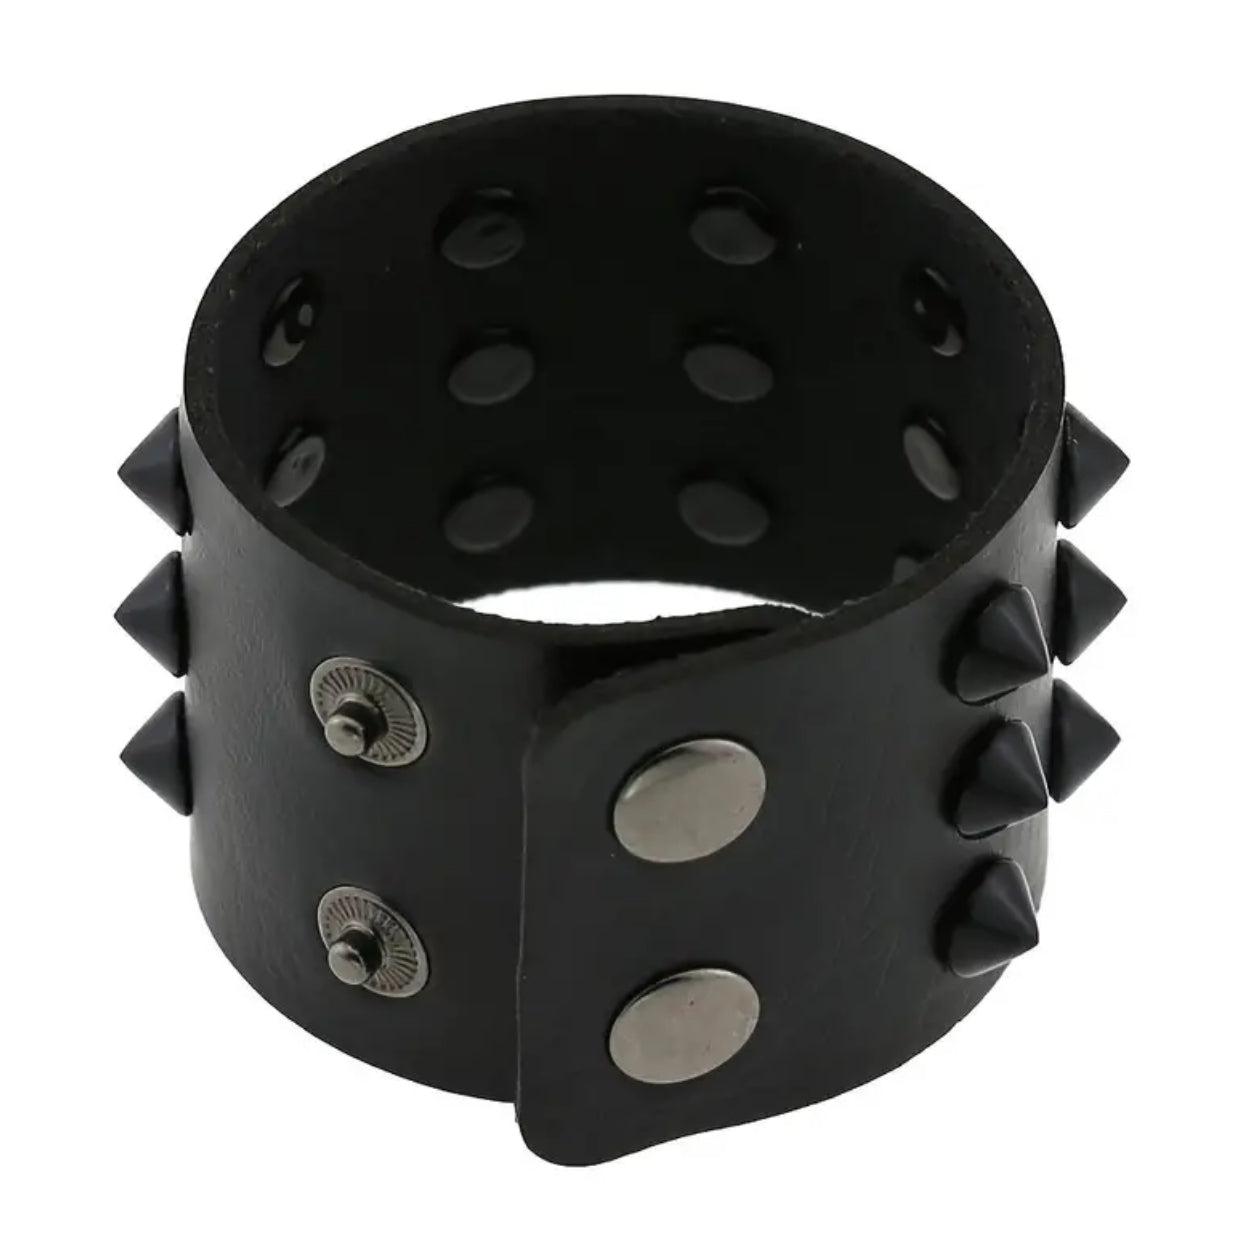 PU Leather Spiked Bracelets